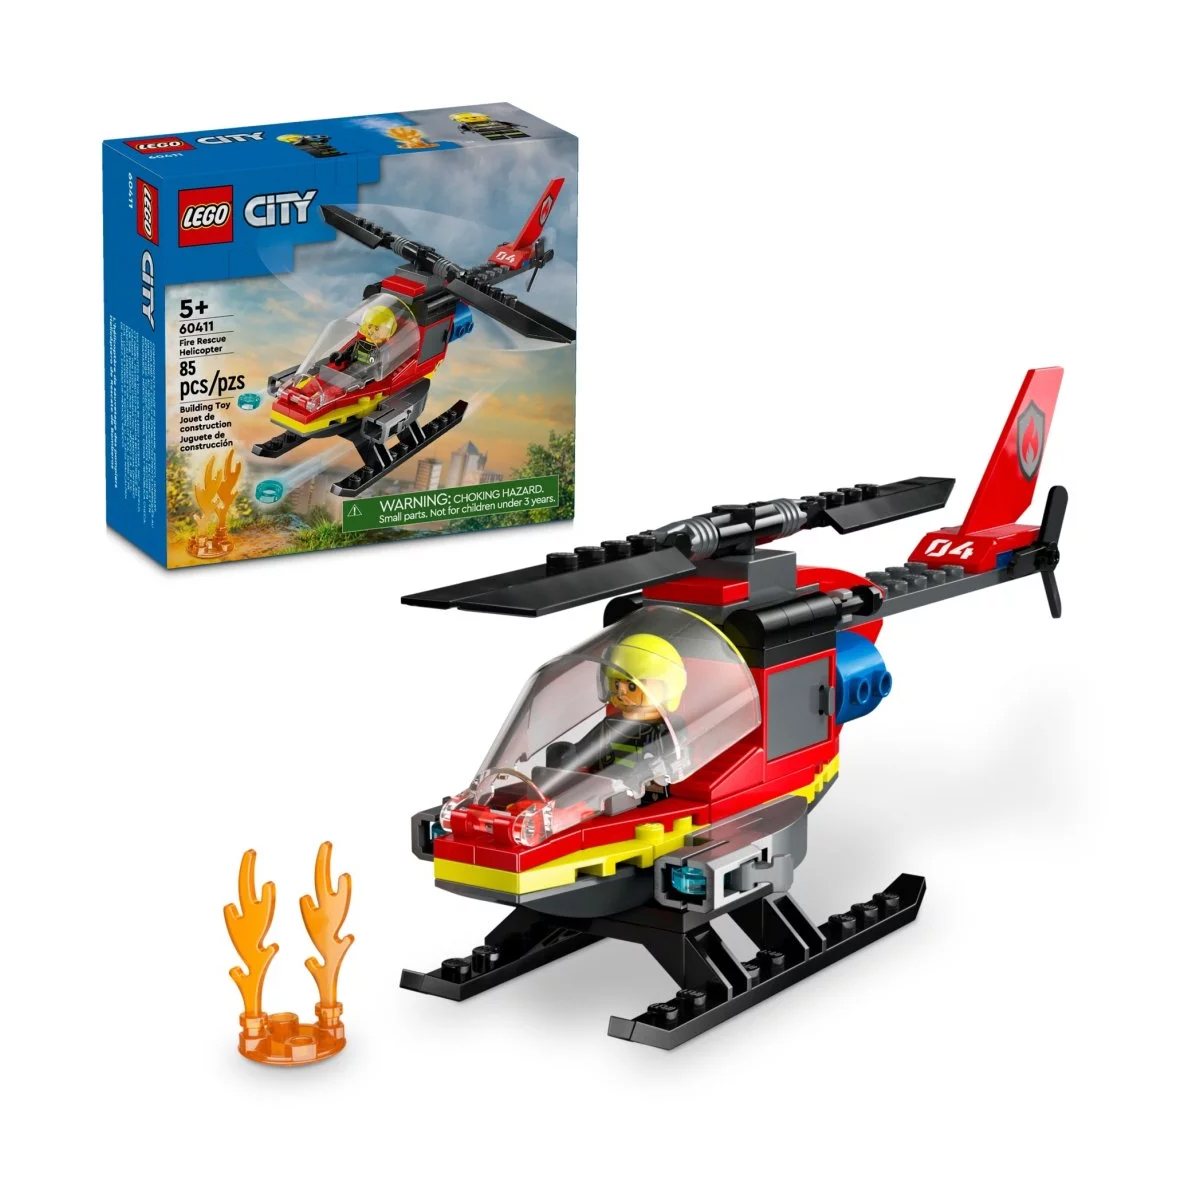 Конструктор Lego City Fire Rescue Helicopter 60411, 85 деталей lego technic набор моделей спасательного вертолета airbus h175